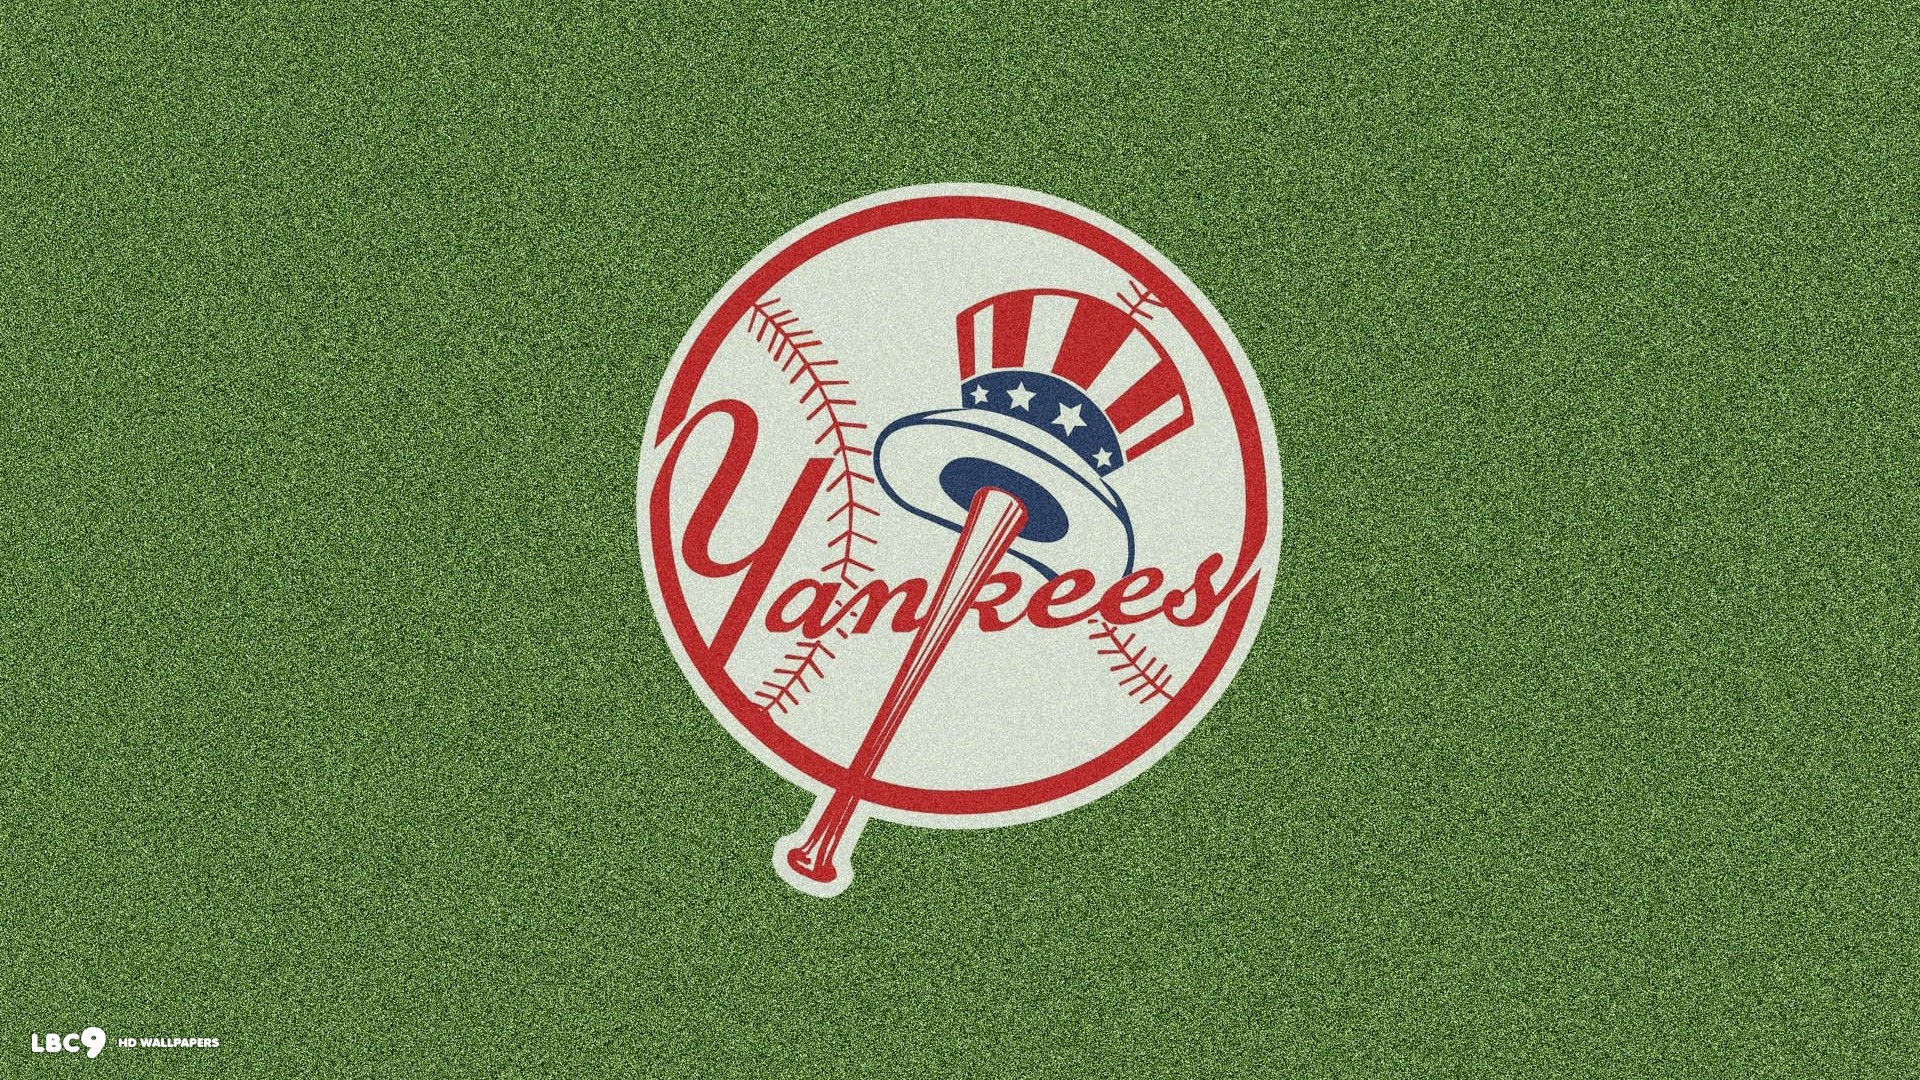 New York Yankees Wallpaper Desktop (61+ images)1920 x 1080